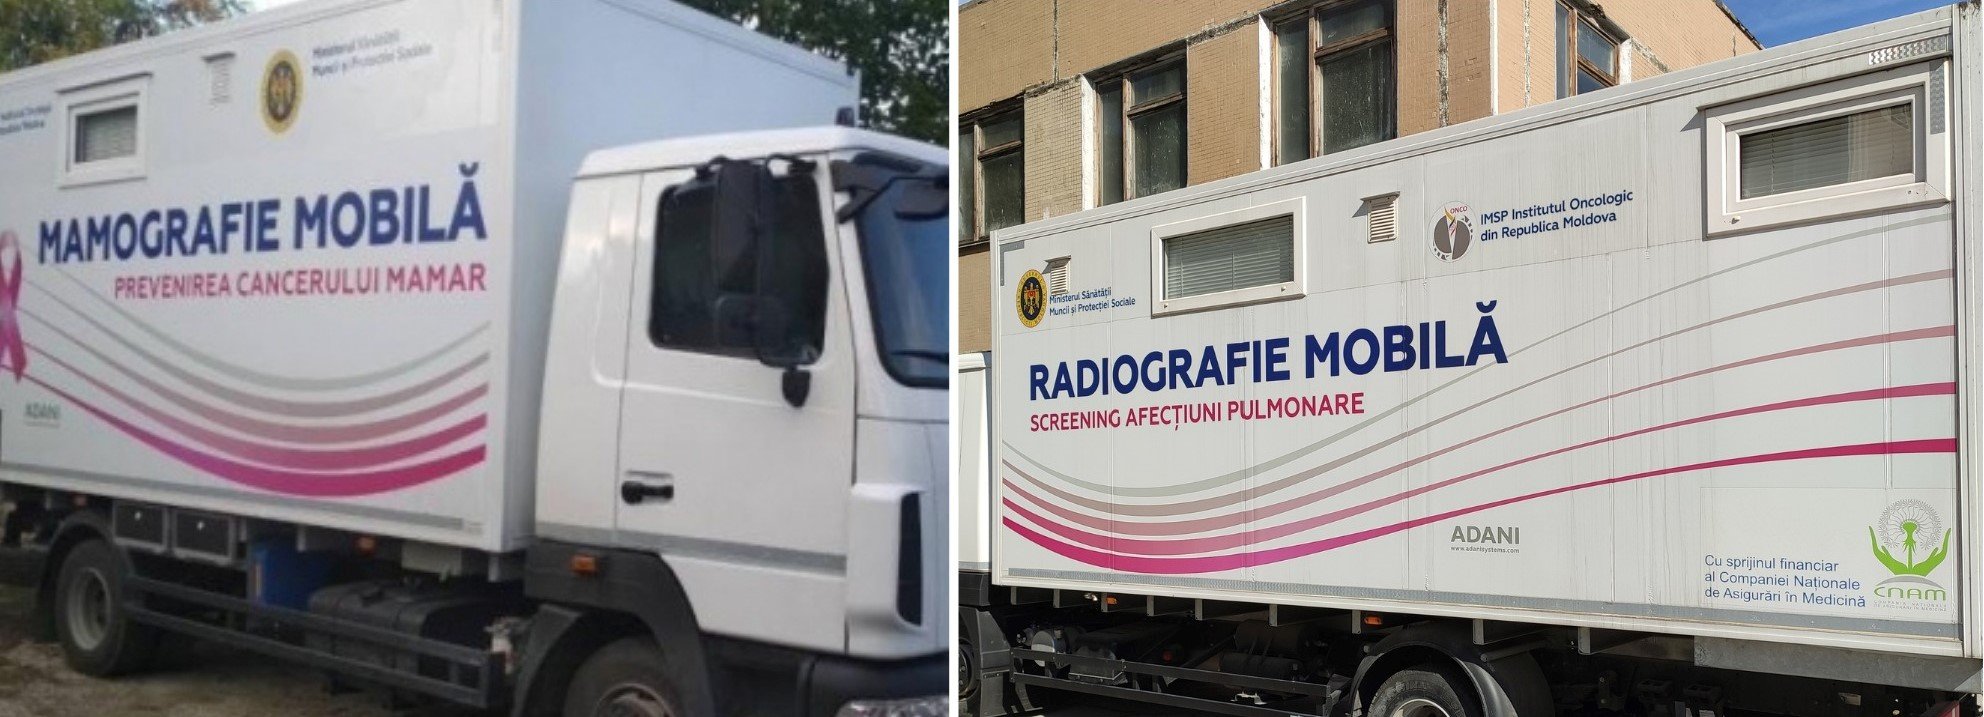 Complexul radiodiagnostic mobil pentru examinarea cutiei toracice se va afla în raionul Șoldănești în această săptămână